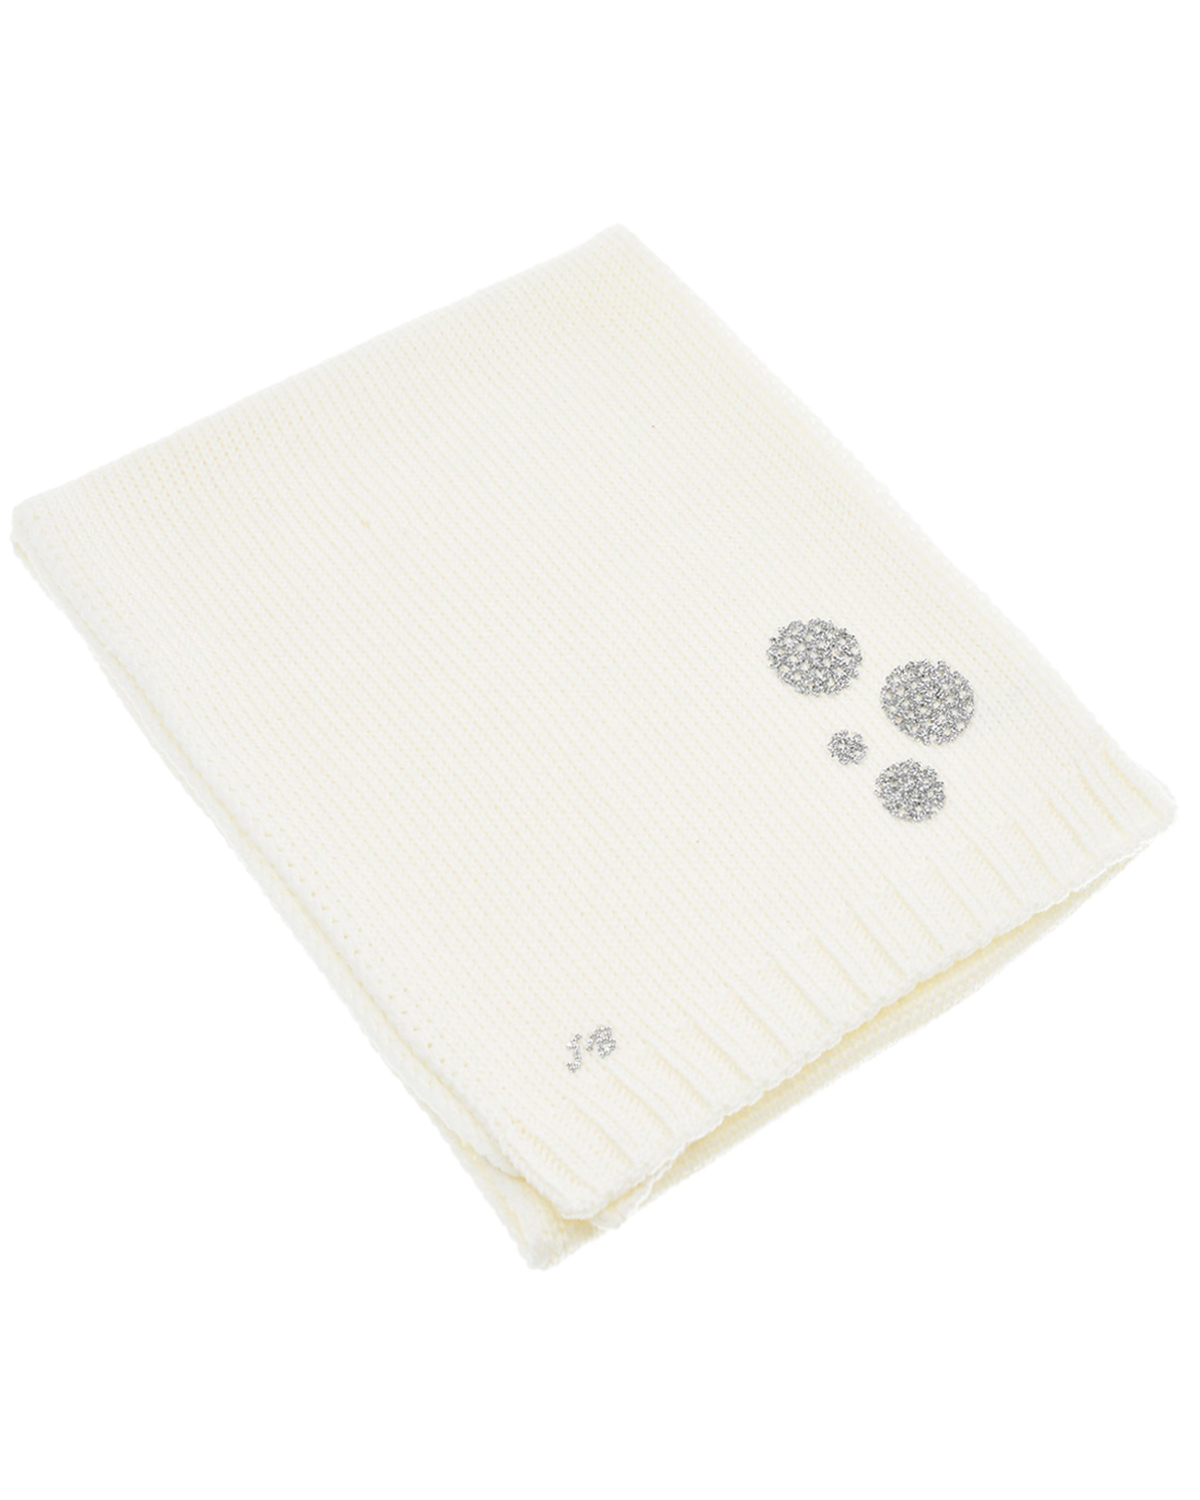 Шерстяной шарф с серебристым декором Joli Bebe детский, размер unica, цвет белый